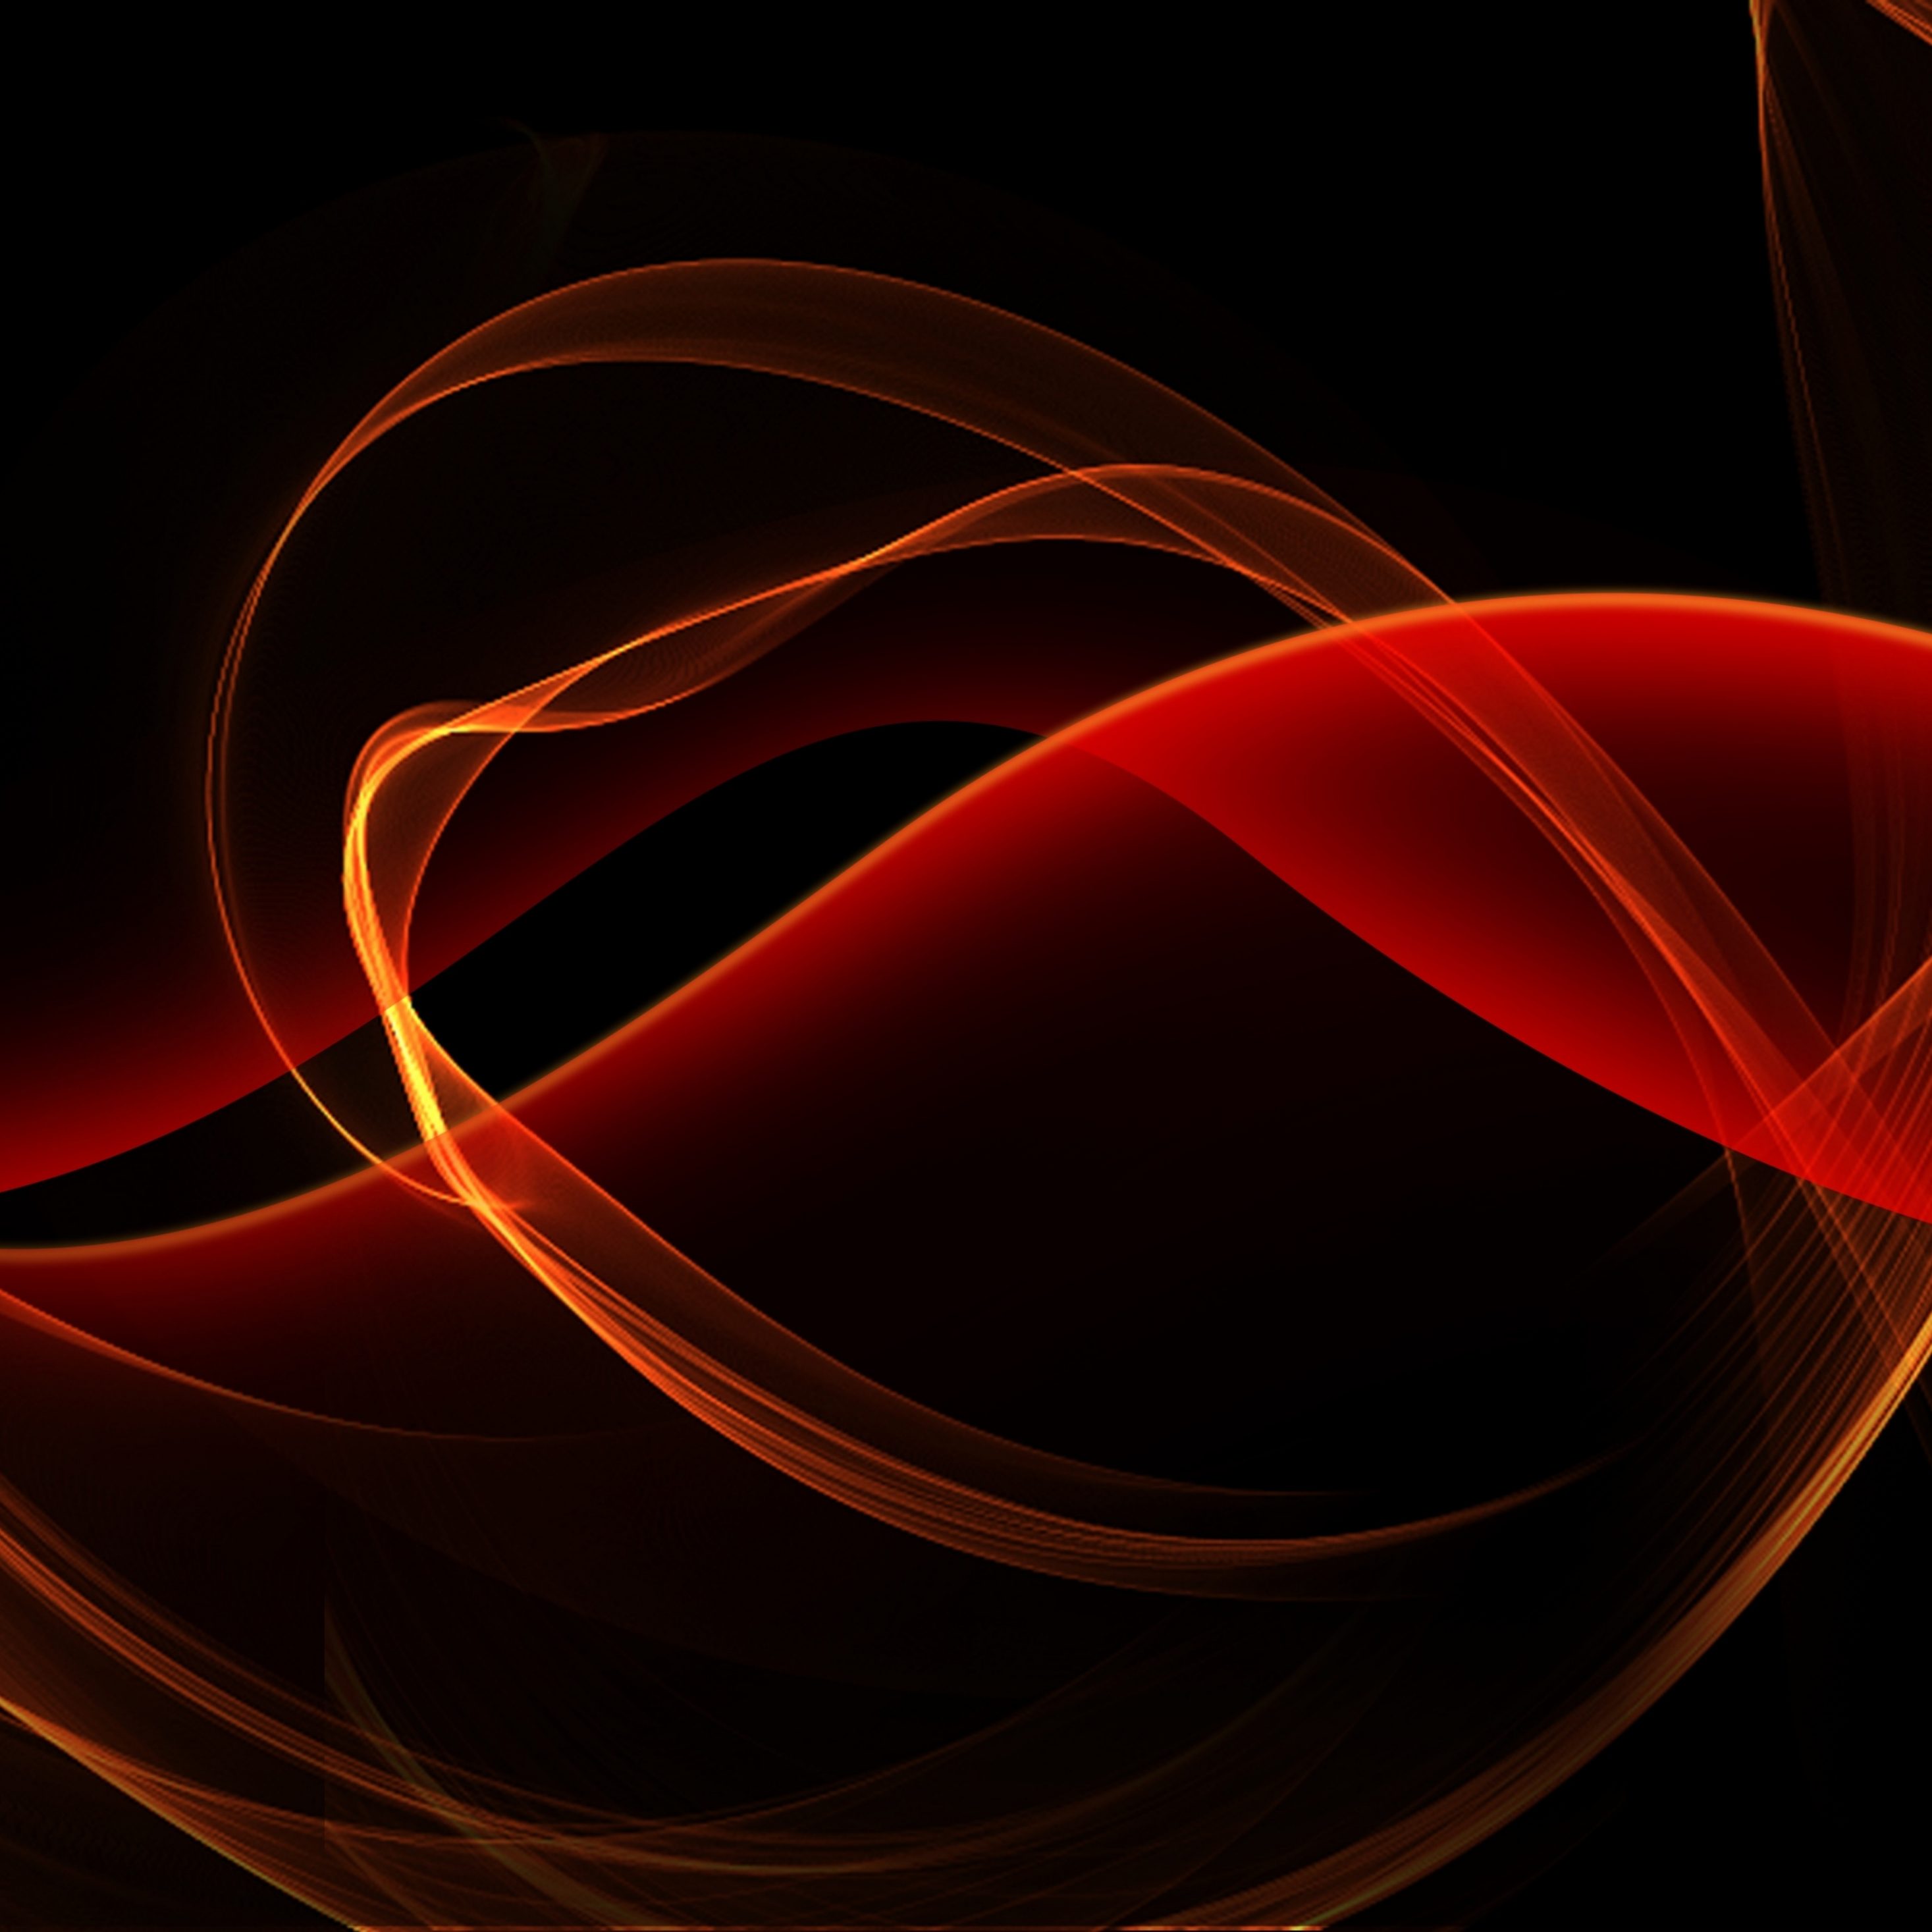 2934x2934 iOS iPad wallpaper 4k Black and Red Glowing Curves iPad Wallpaper 2934x2934 pixels resolution